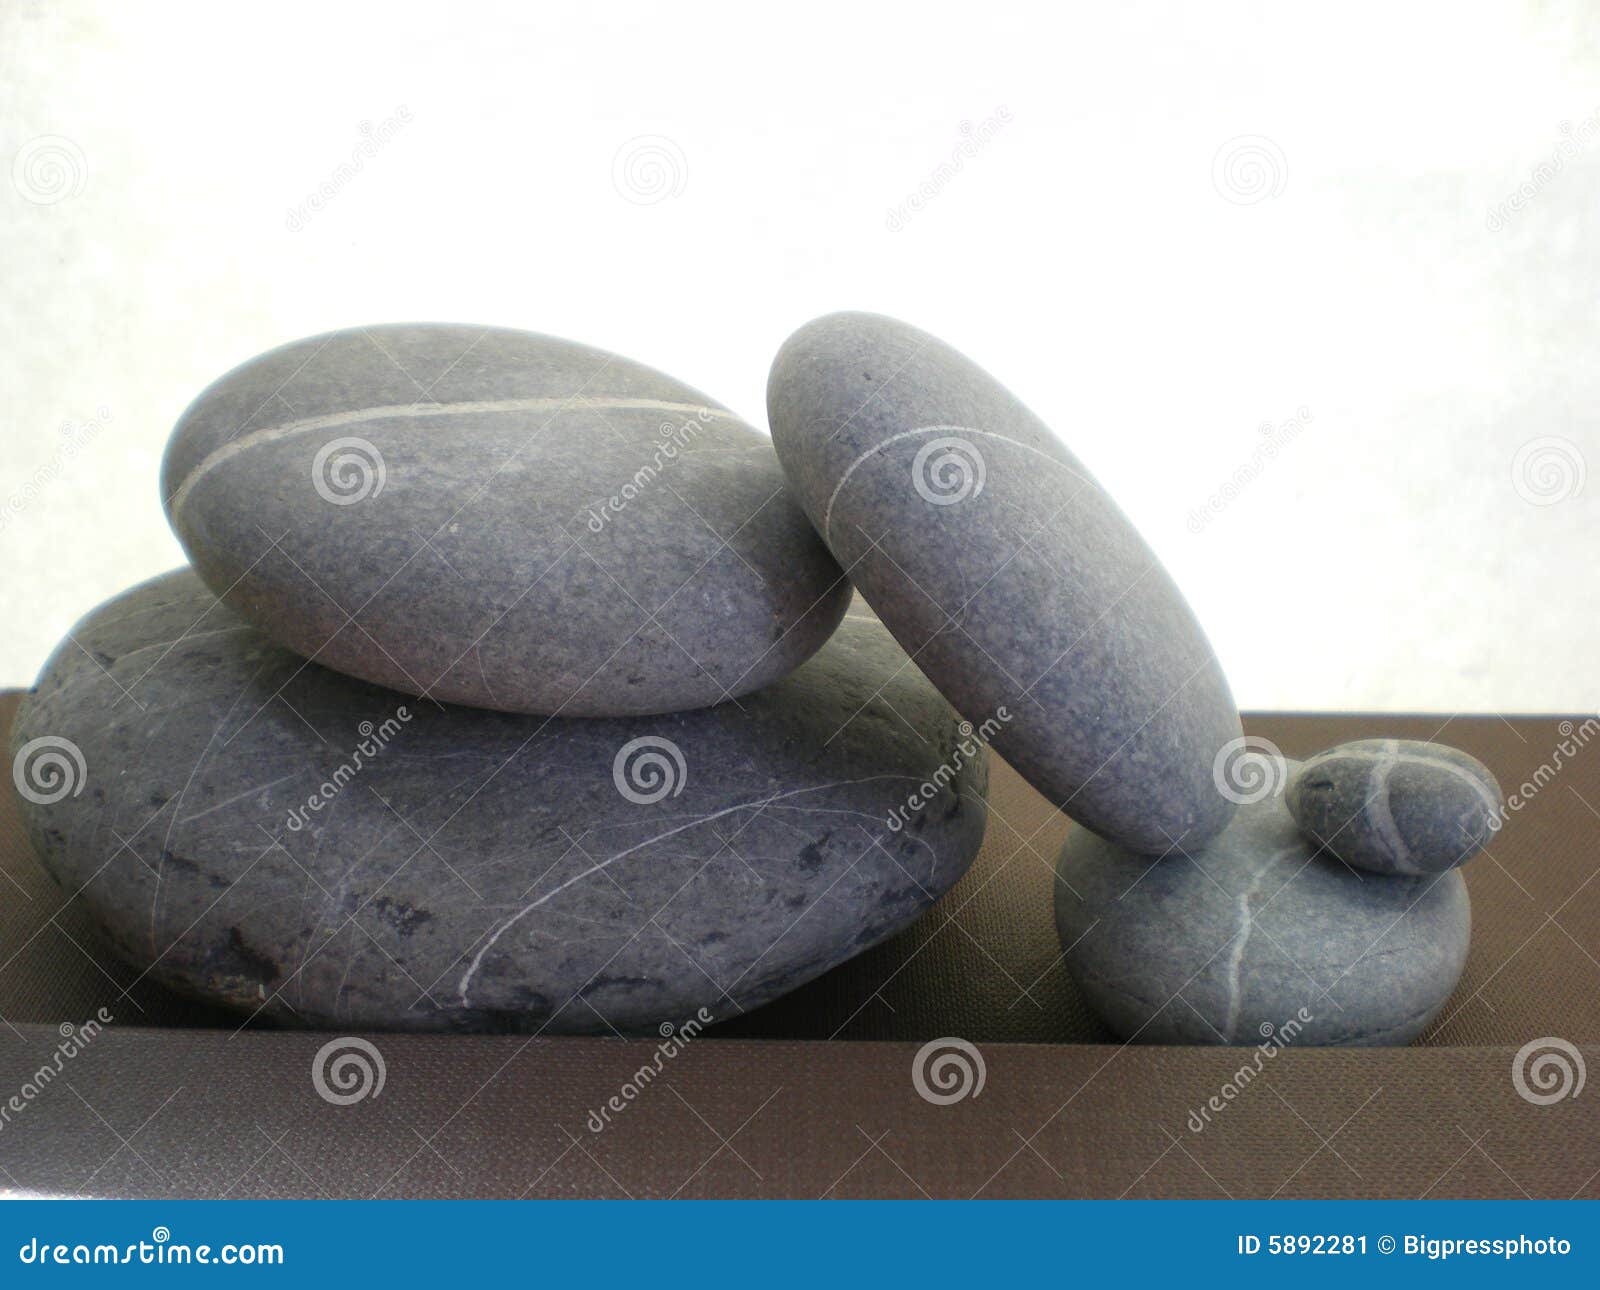 unbalanced zen stones